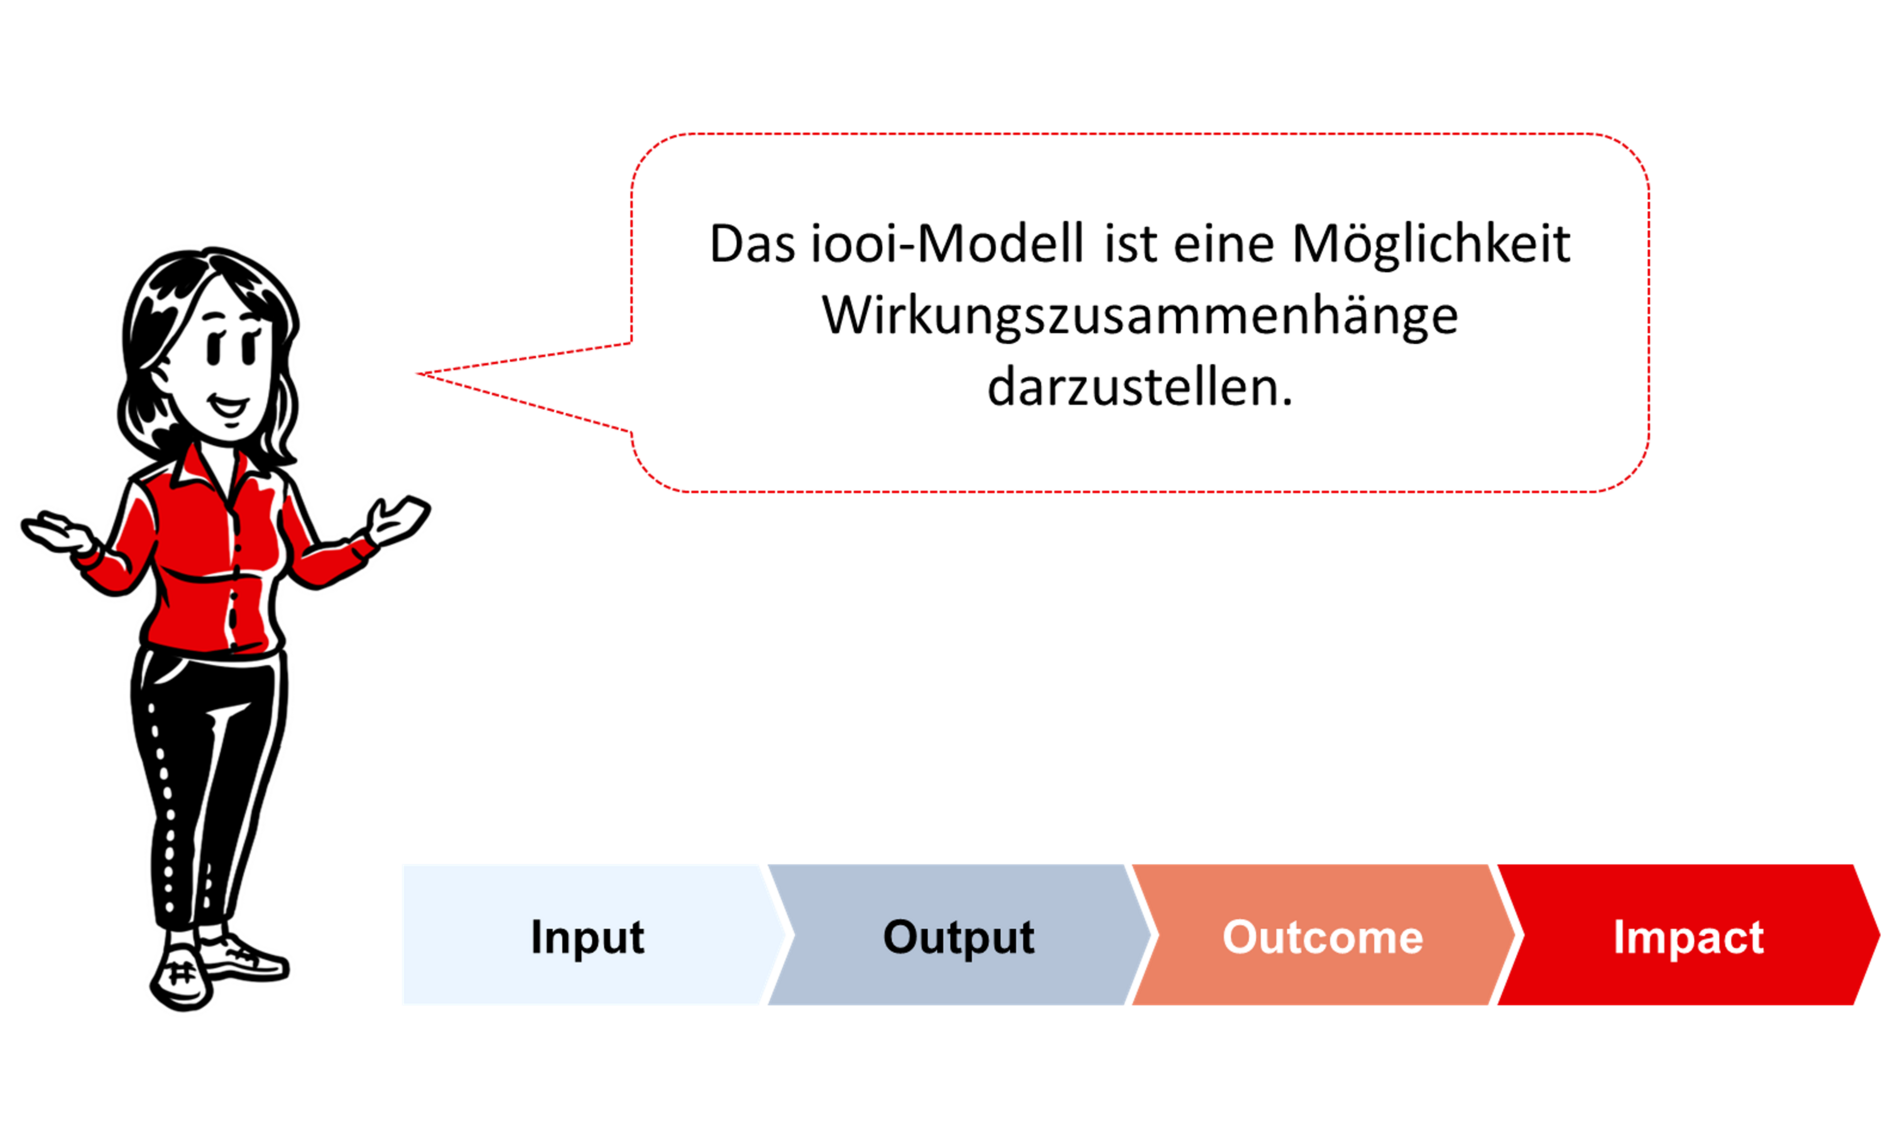 Das iooi-Modell steht für Input, Output, Outcome, Impact